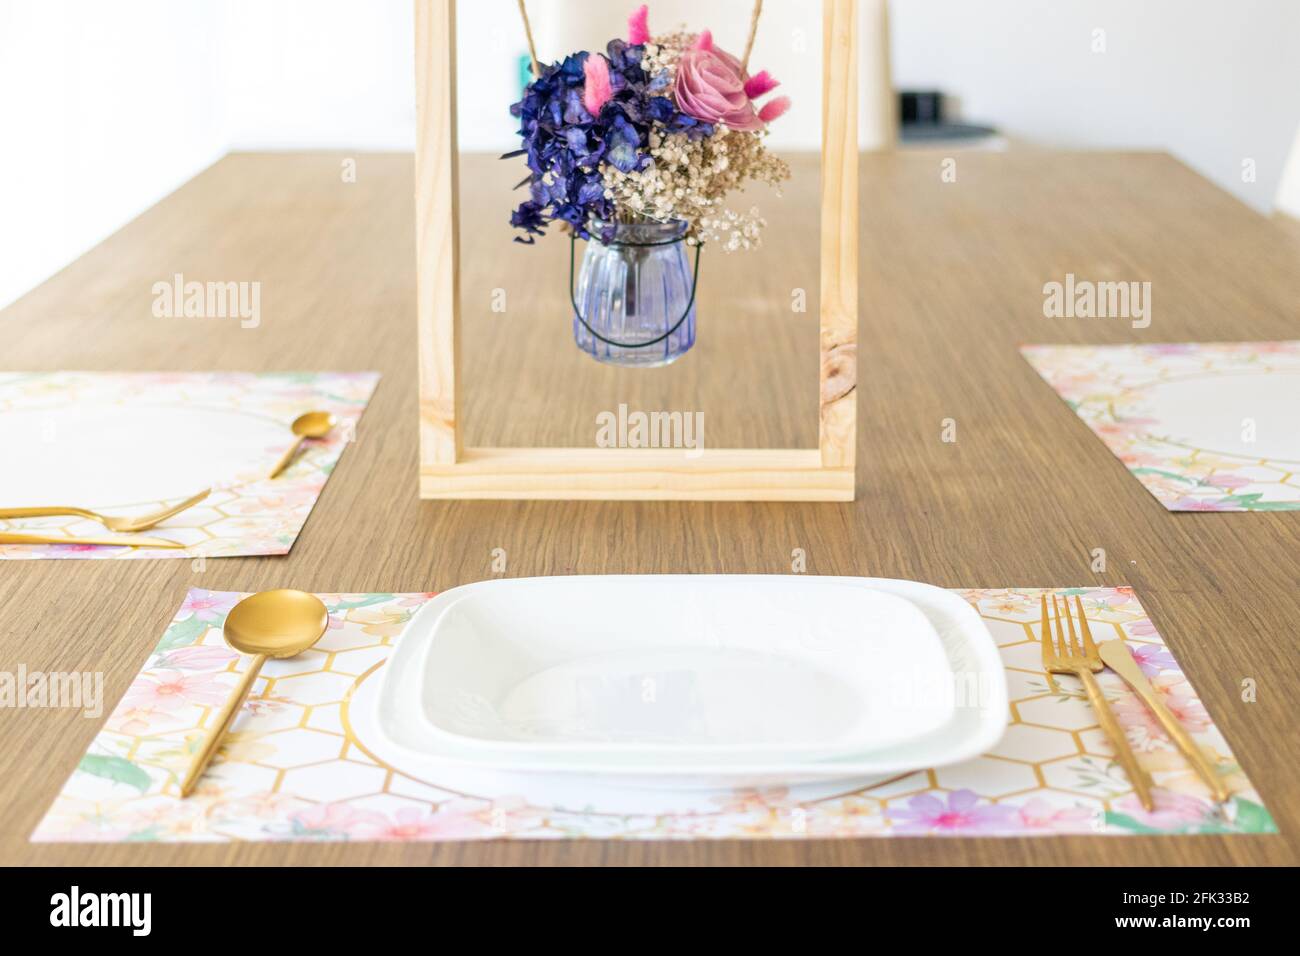 Assiette avec ustensiles, sur la table décorée d'un petit arrangement de fleurs Banque D'Images